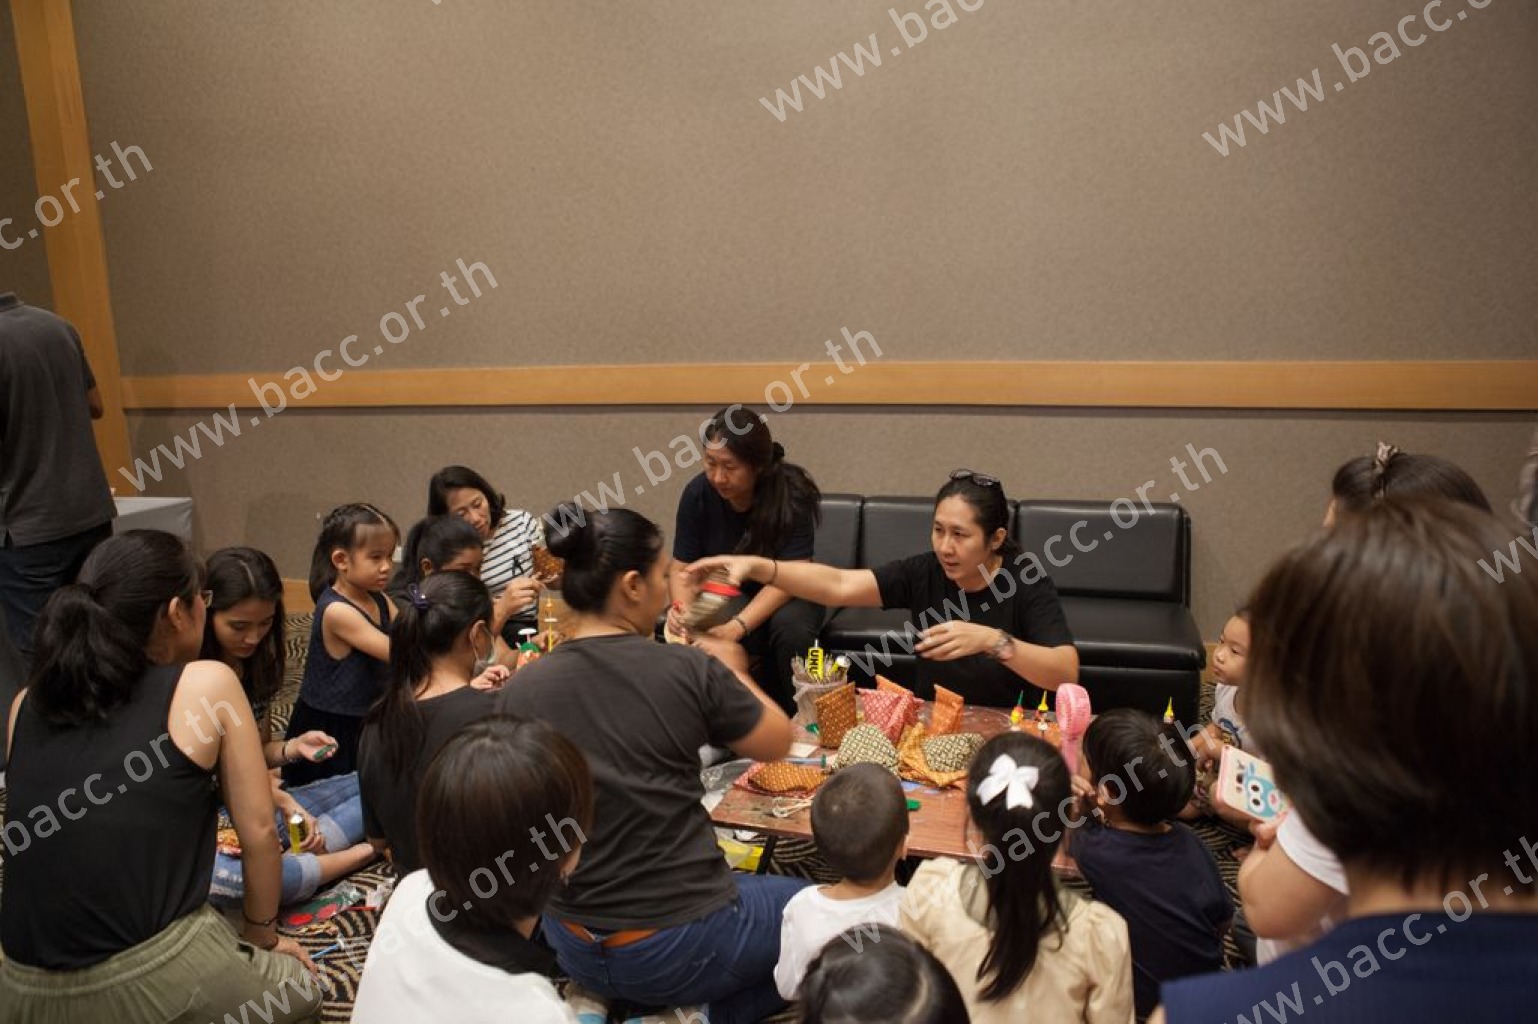 Storytelling Activity for Kids: “Nemirat in Wonderland”